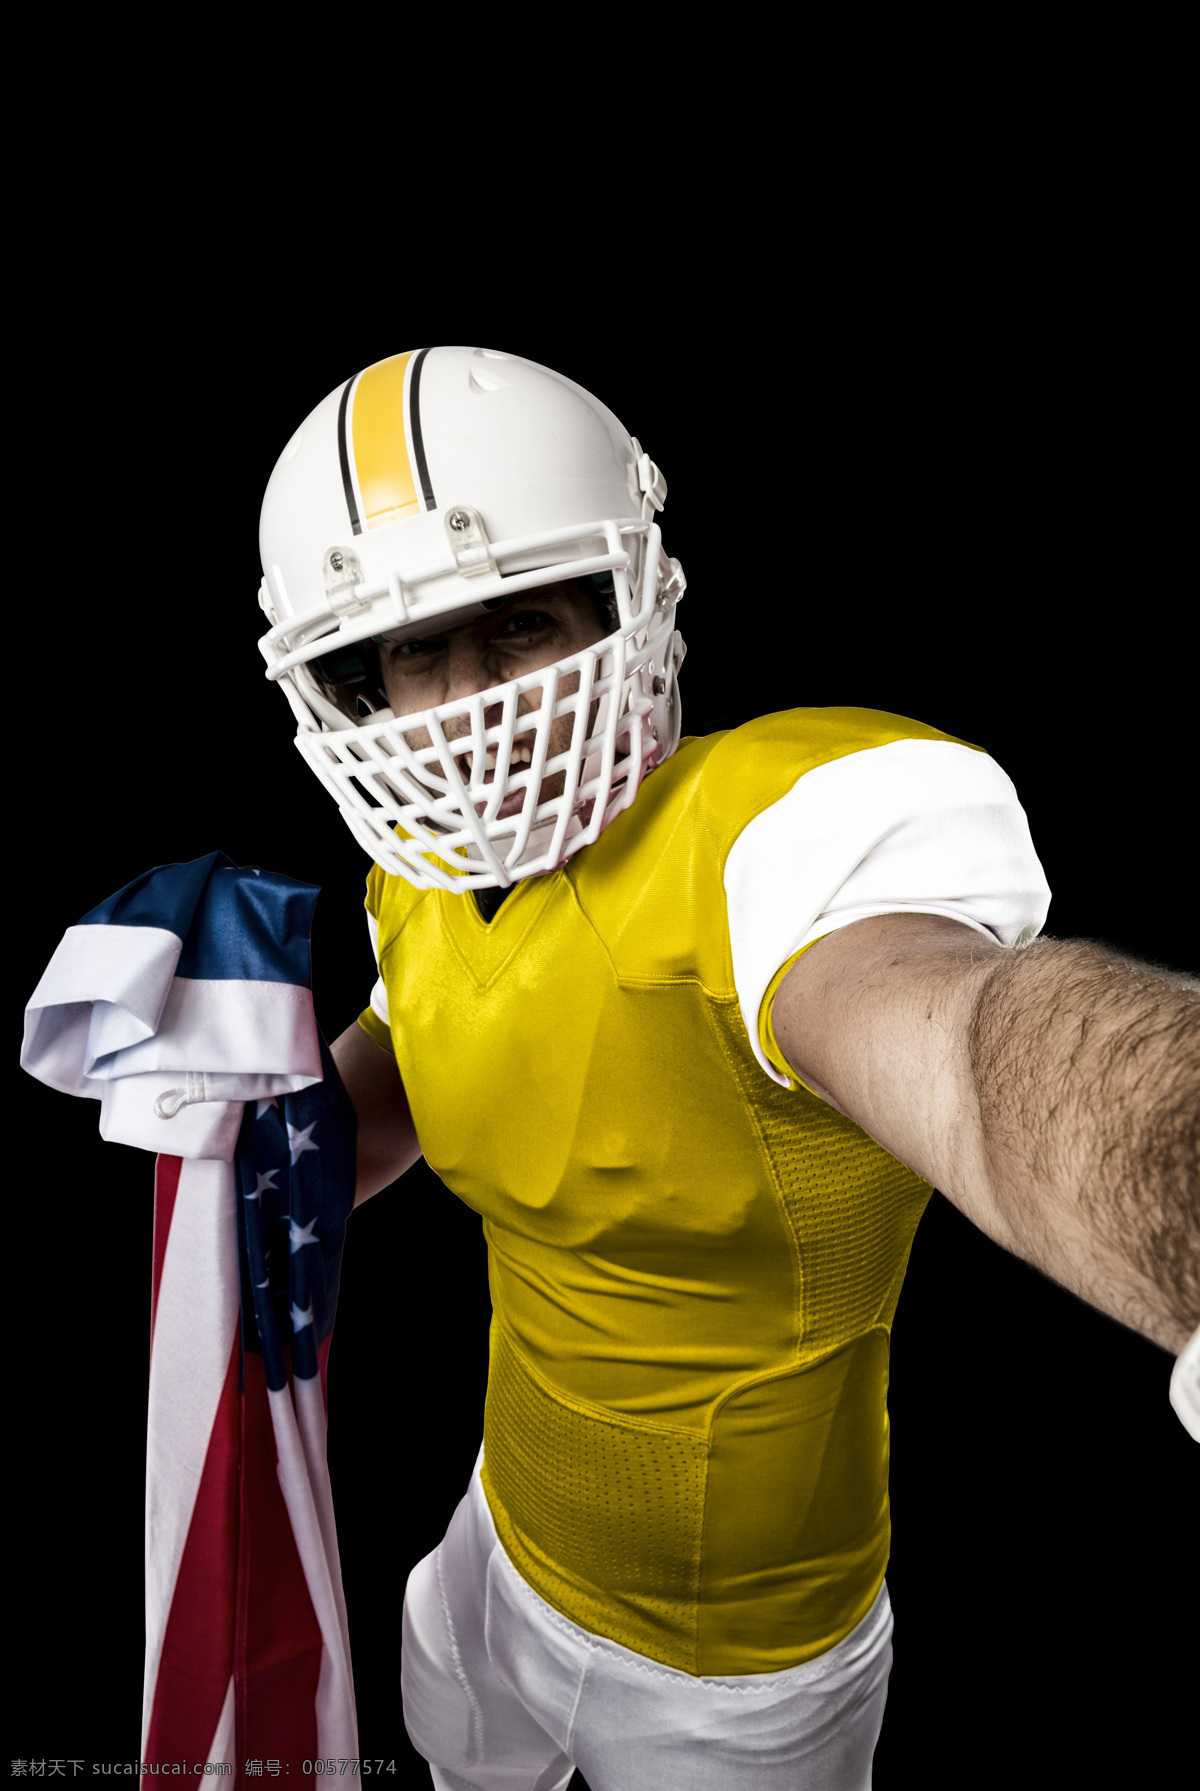 戴 头盔 橄榄球 运动员 美式足球 体育运动员 体育项目 体育运动 生活百科 黑色